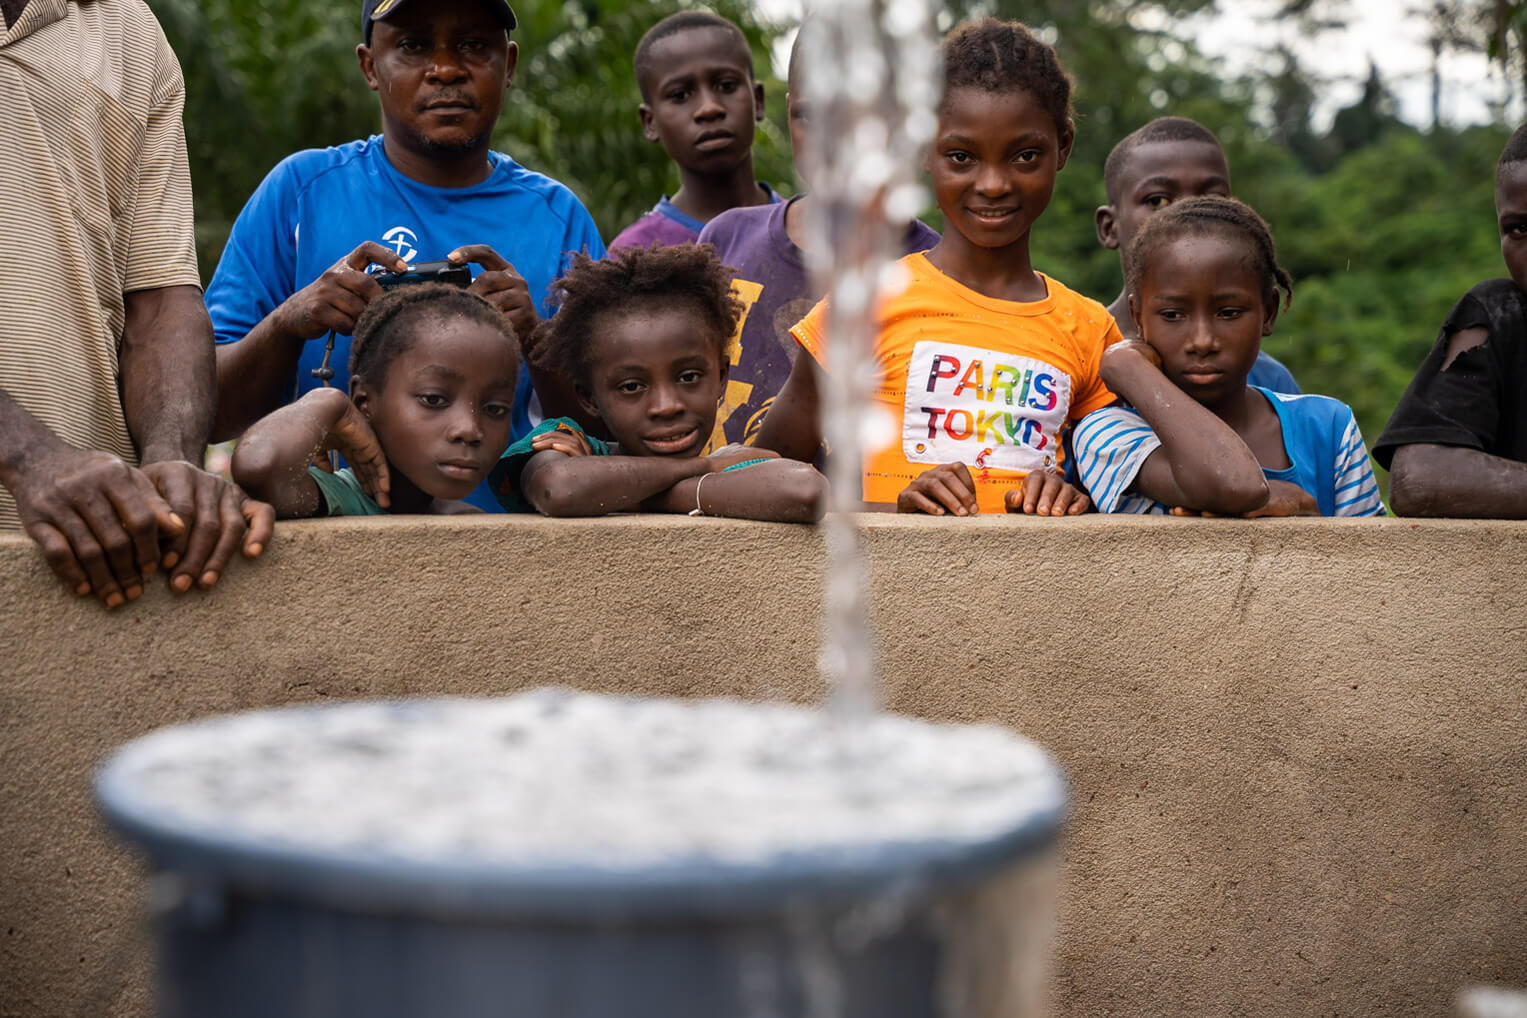 Missão fornece água potável e prega mensagem de Jesus: “Muitos chegam à fé”